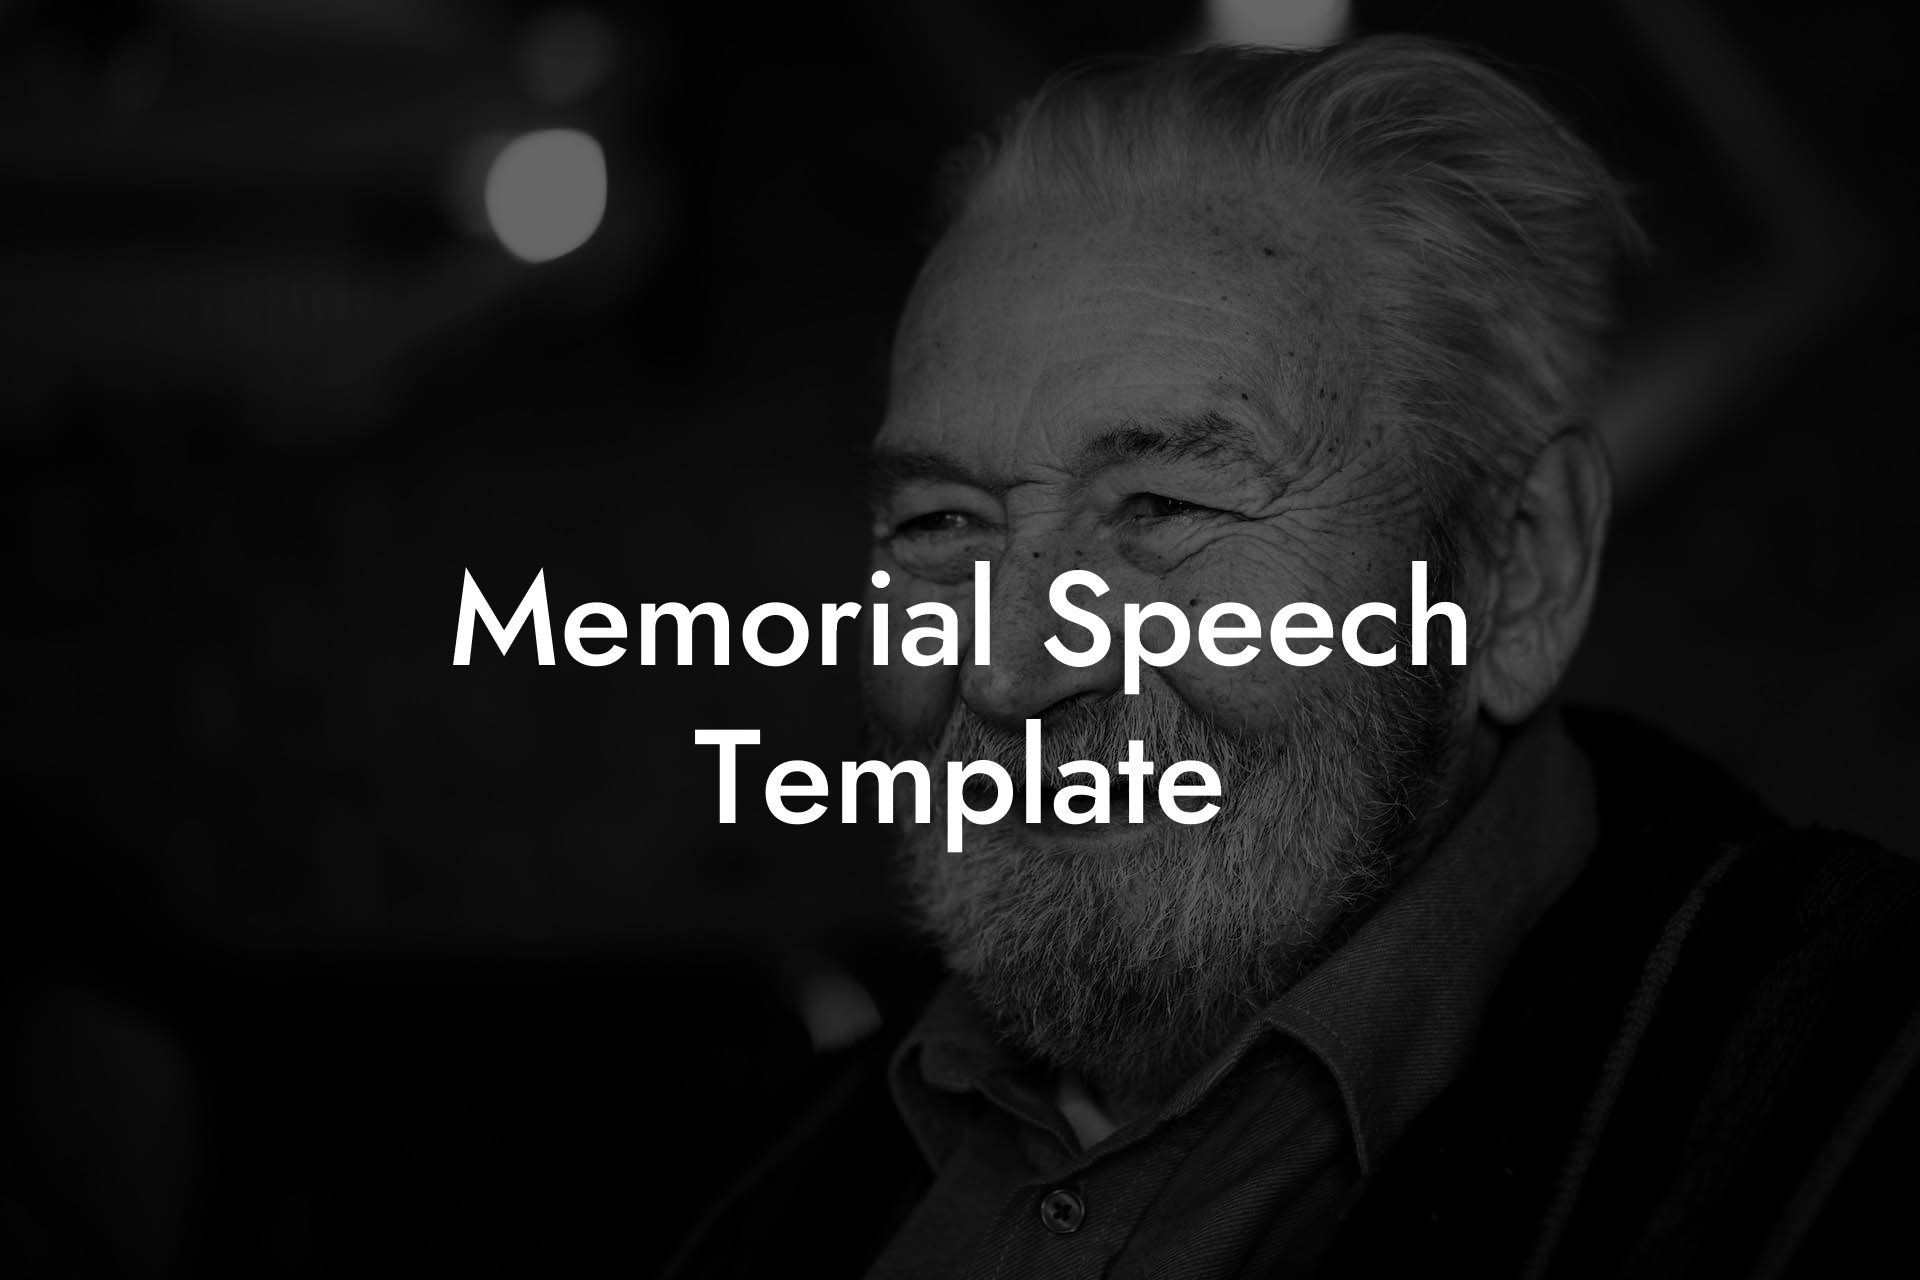 Memorial Speech Template